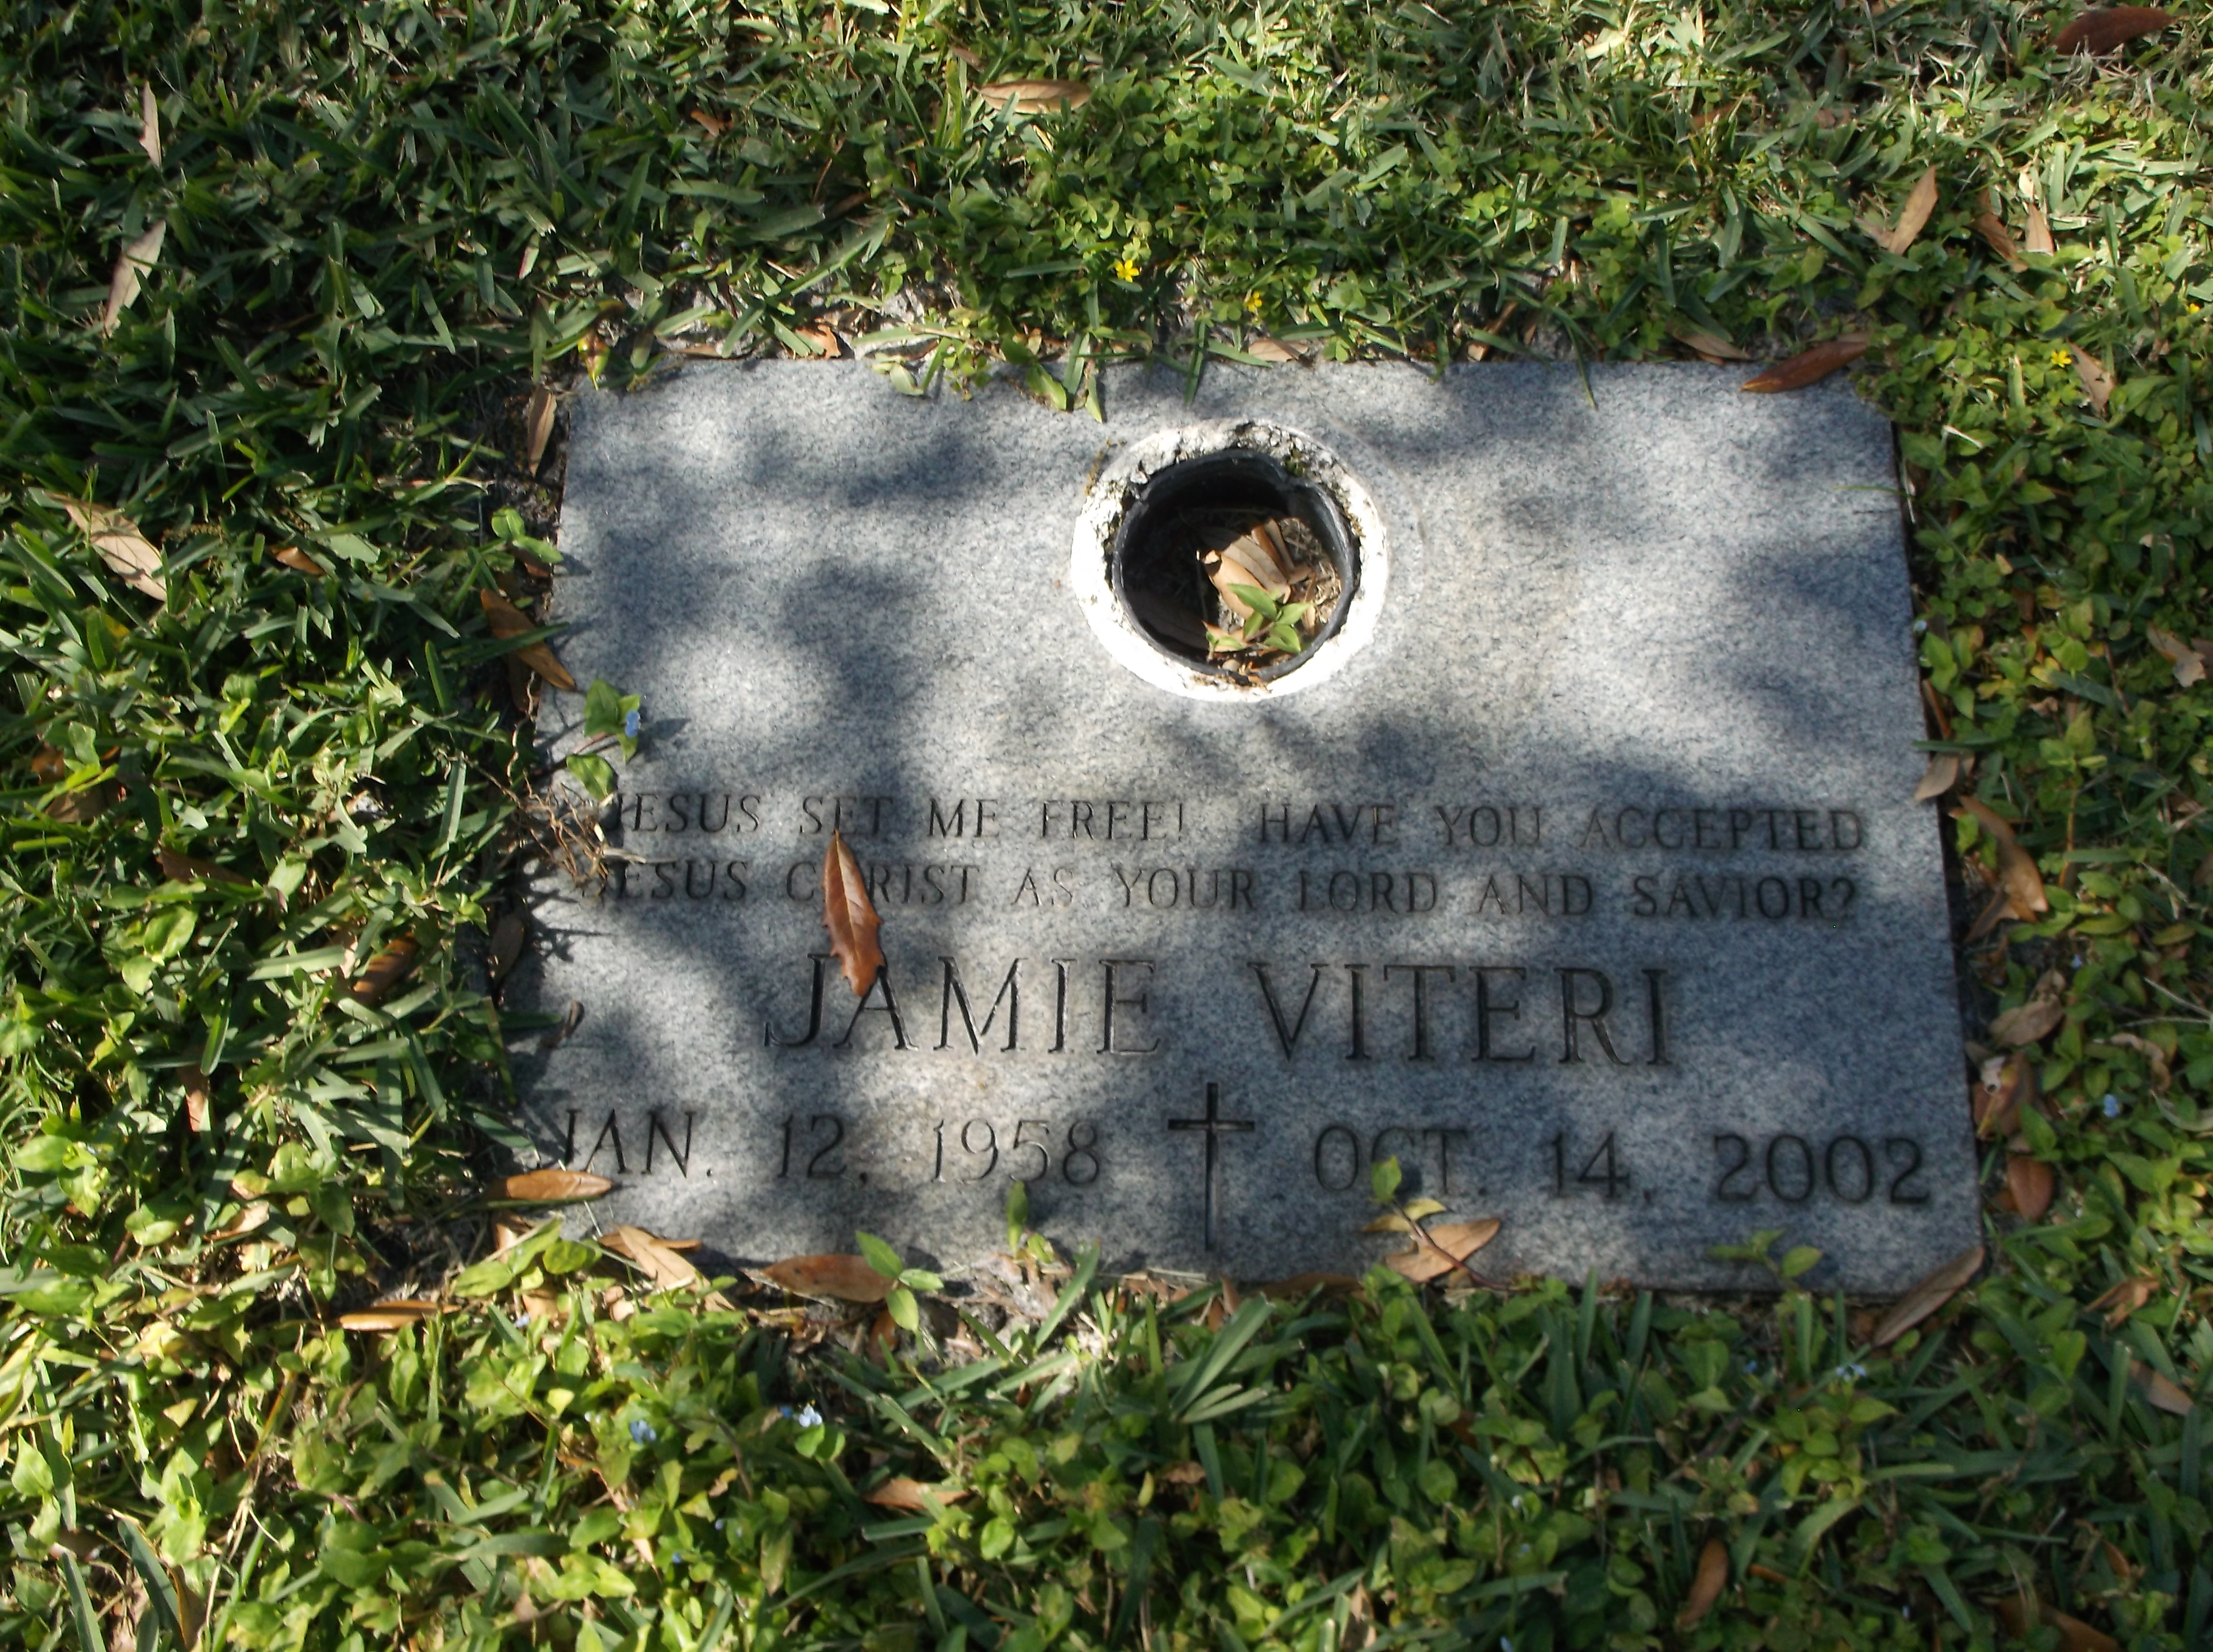 Jamie Viteri